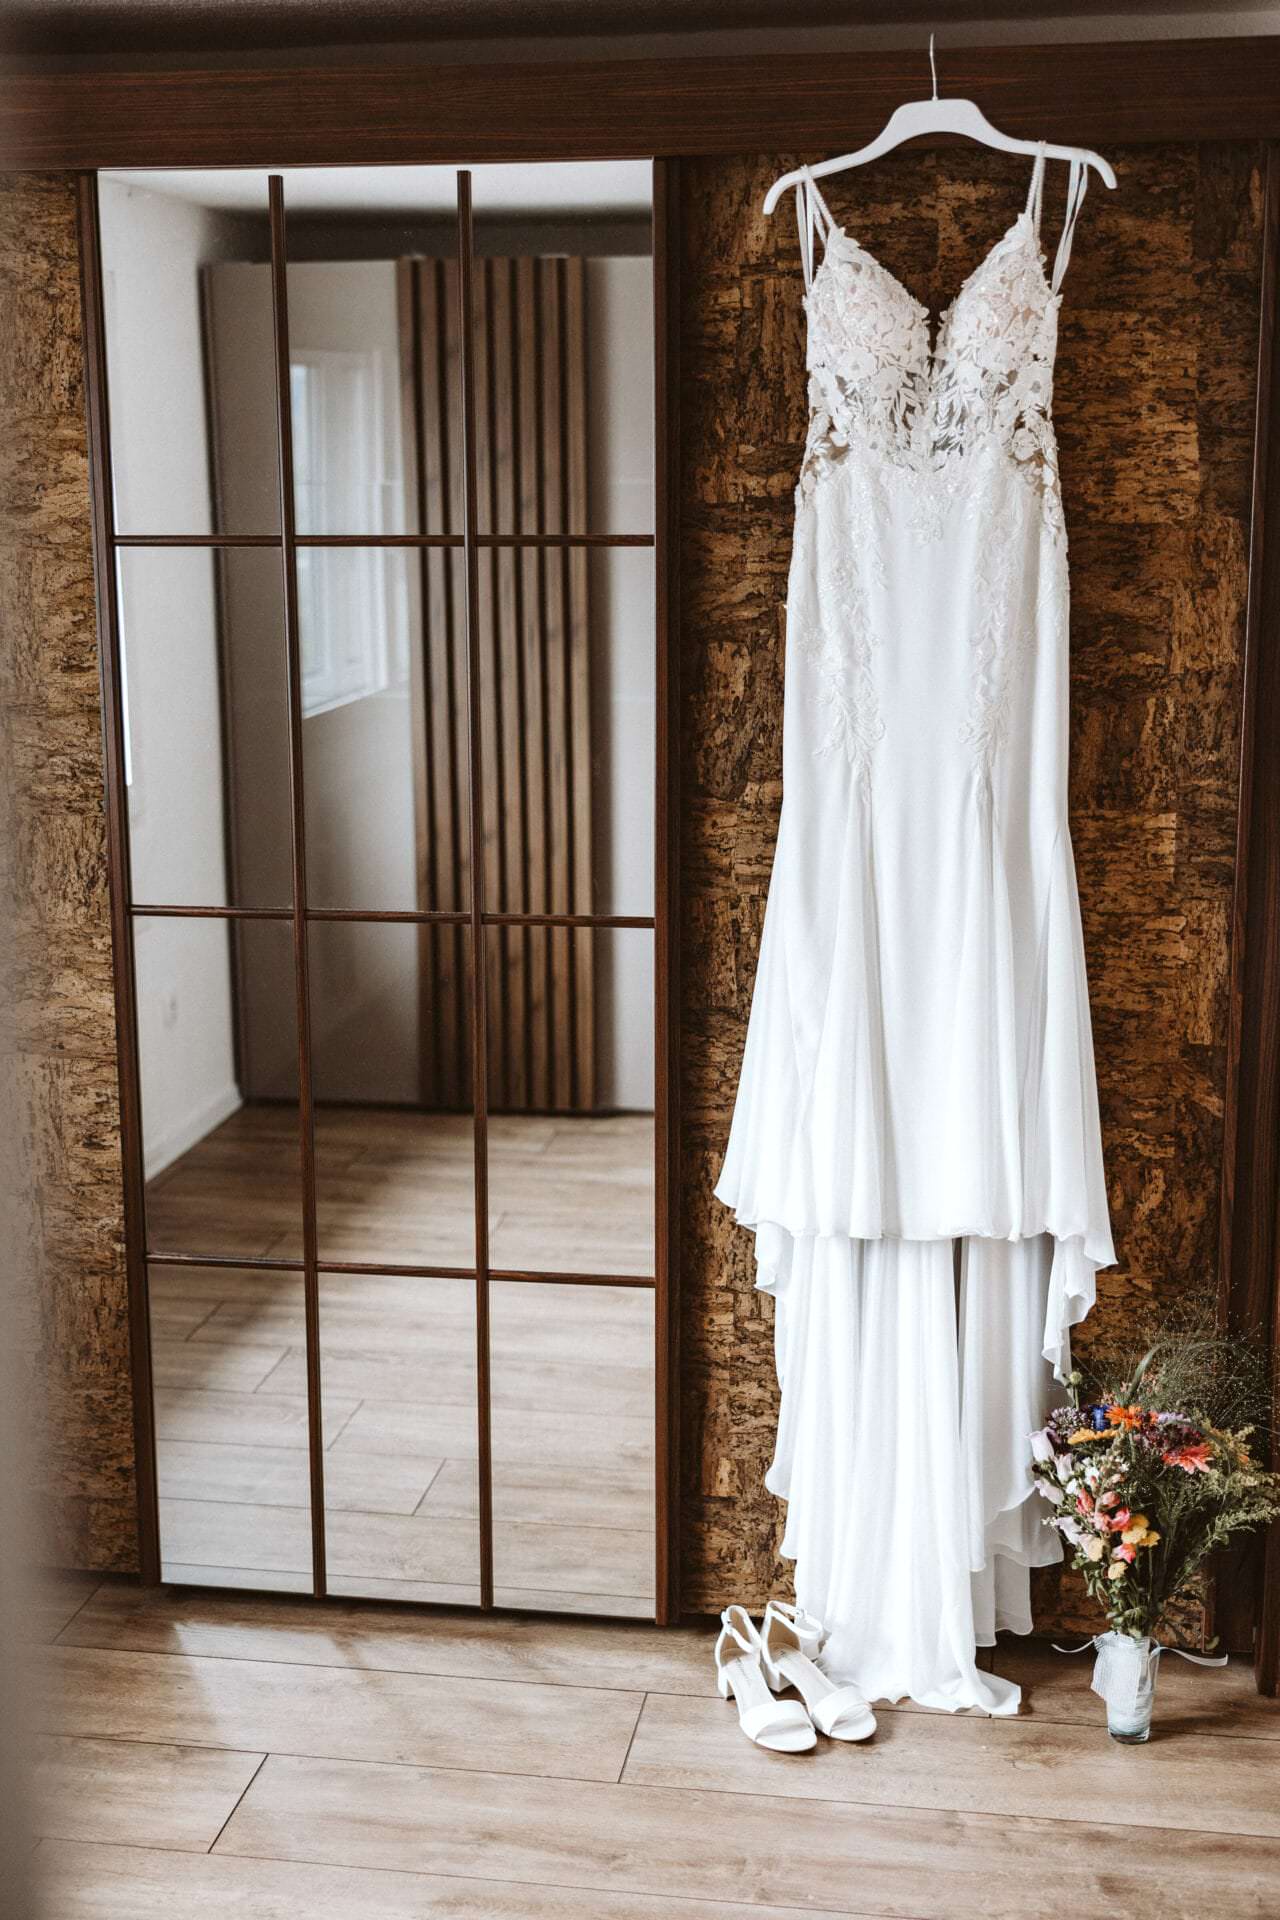 Hochzeitsfotograf Münster Münsterland Hochzeit Heiraten Hochzeitsfotos - Hochzeitskleid hängt auf einem weißen Kleiderbügel neben einem Spiegel. Unter dem Hochzeitskleid ist ein Blumenstrauß und Schuhe zu sehen